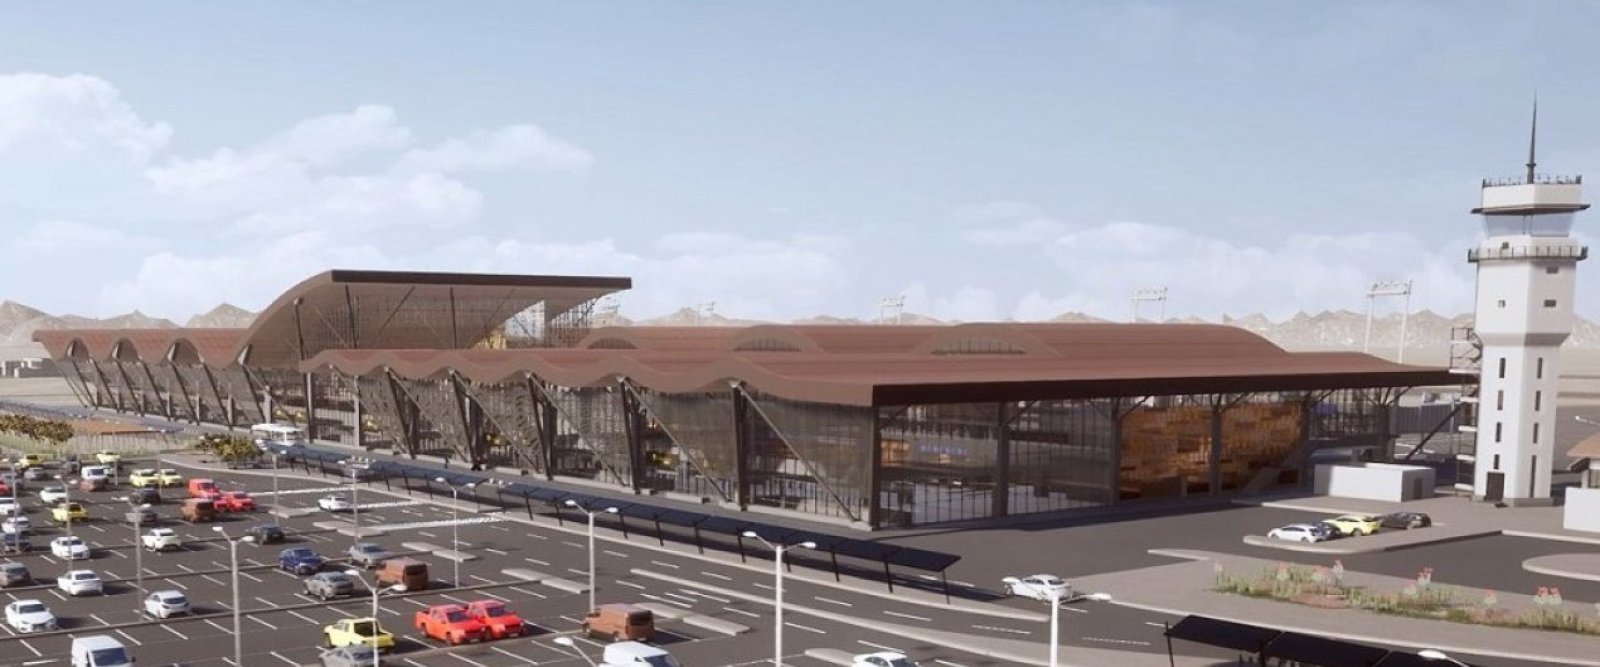 Comenzó nueva concesión del aeropuerto de Calama que triplicará su capacidad de pasajeros